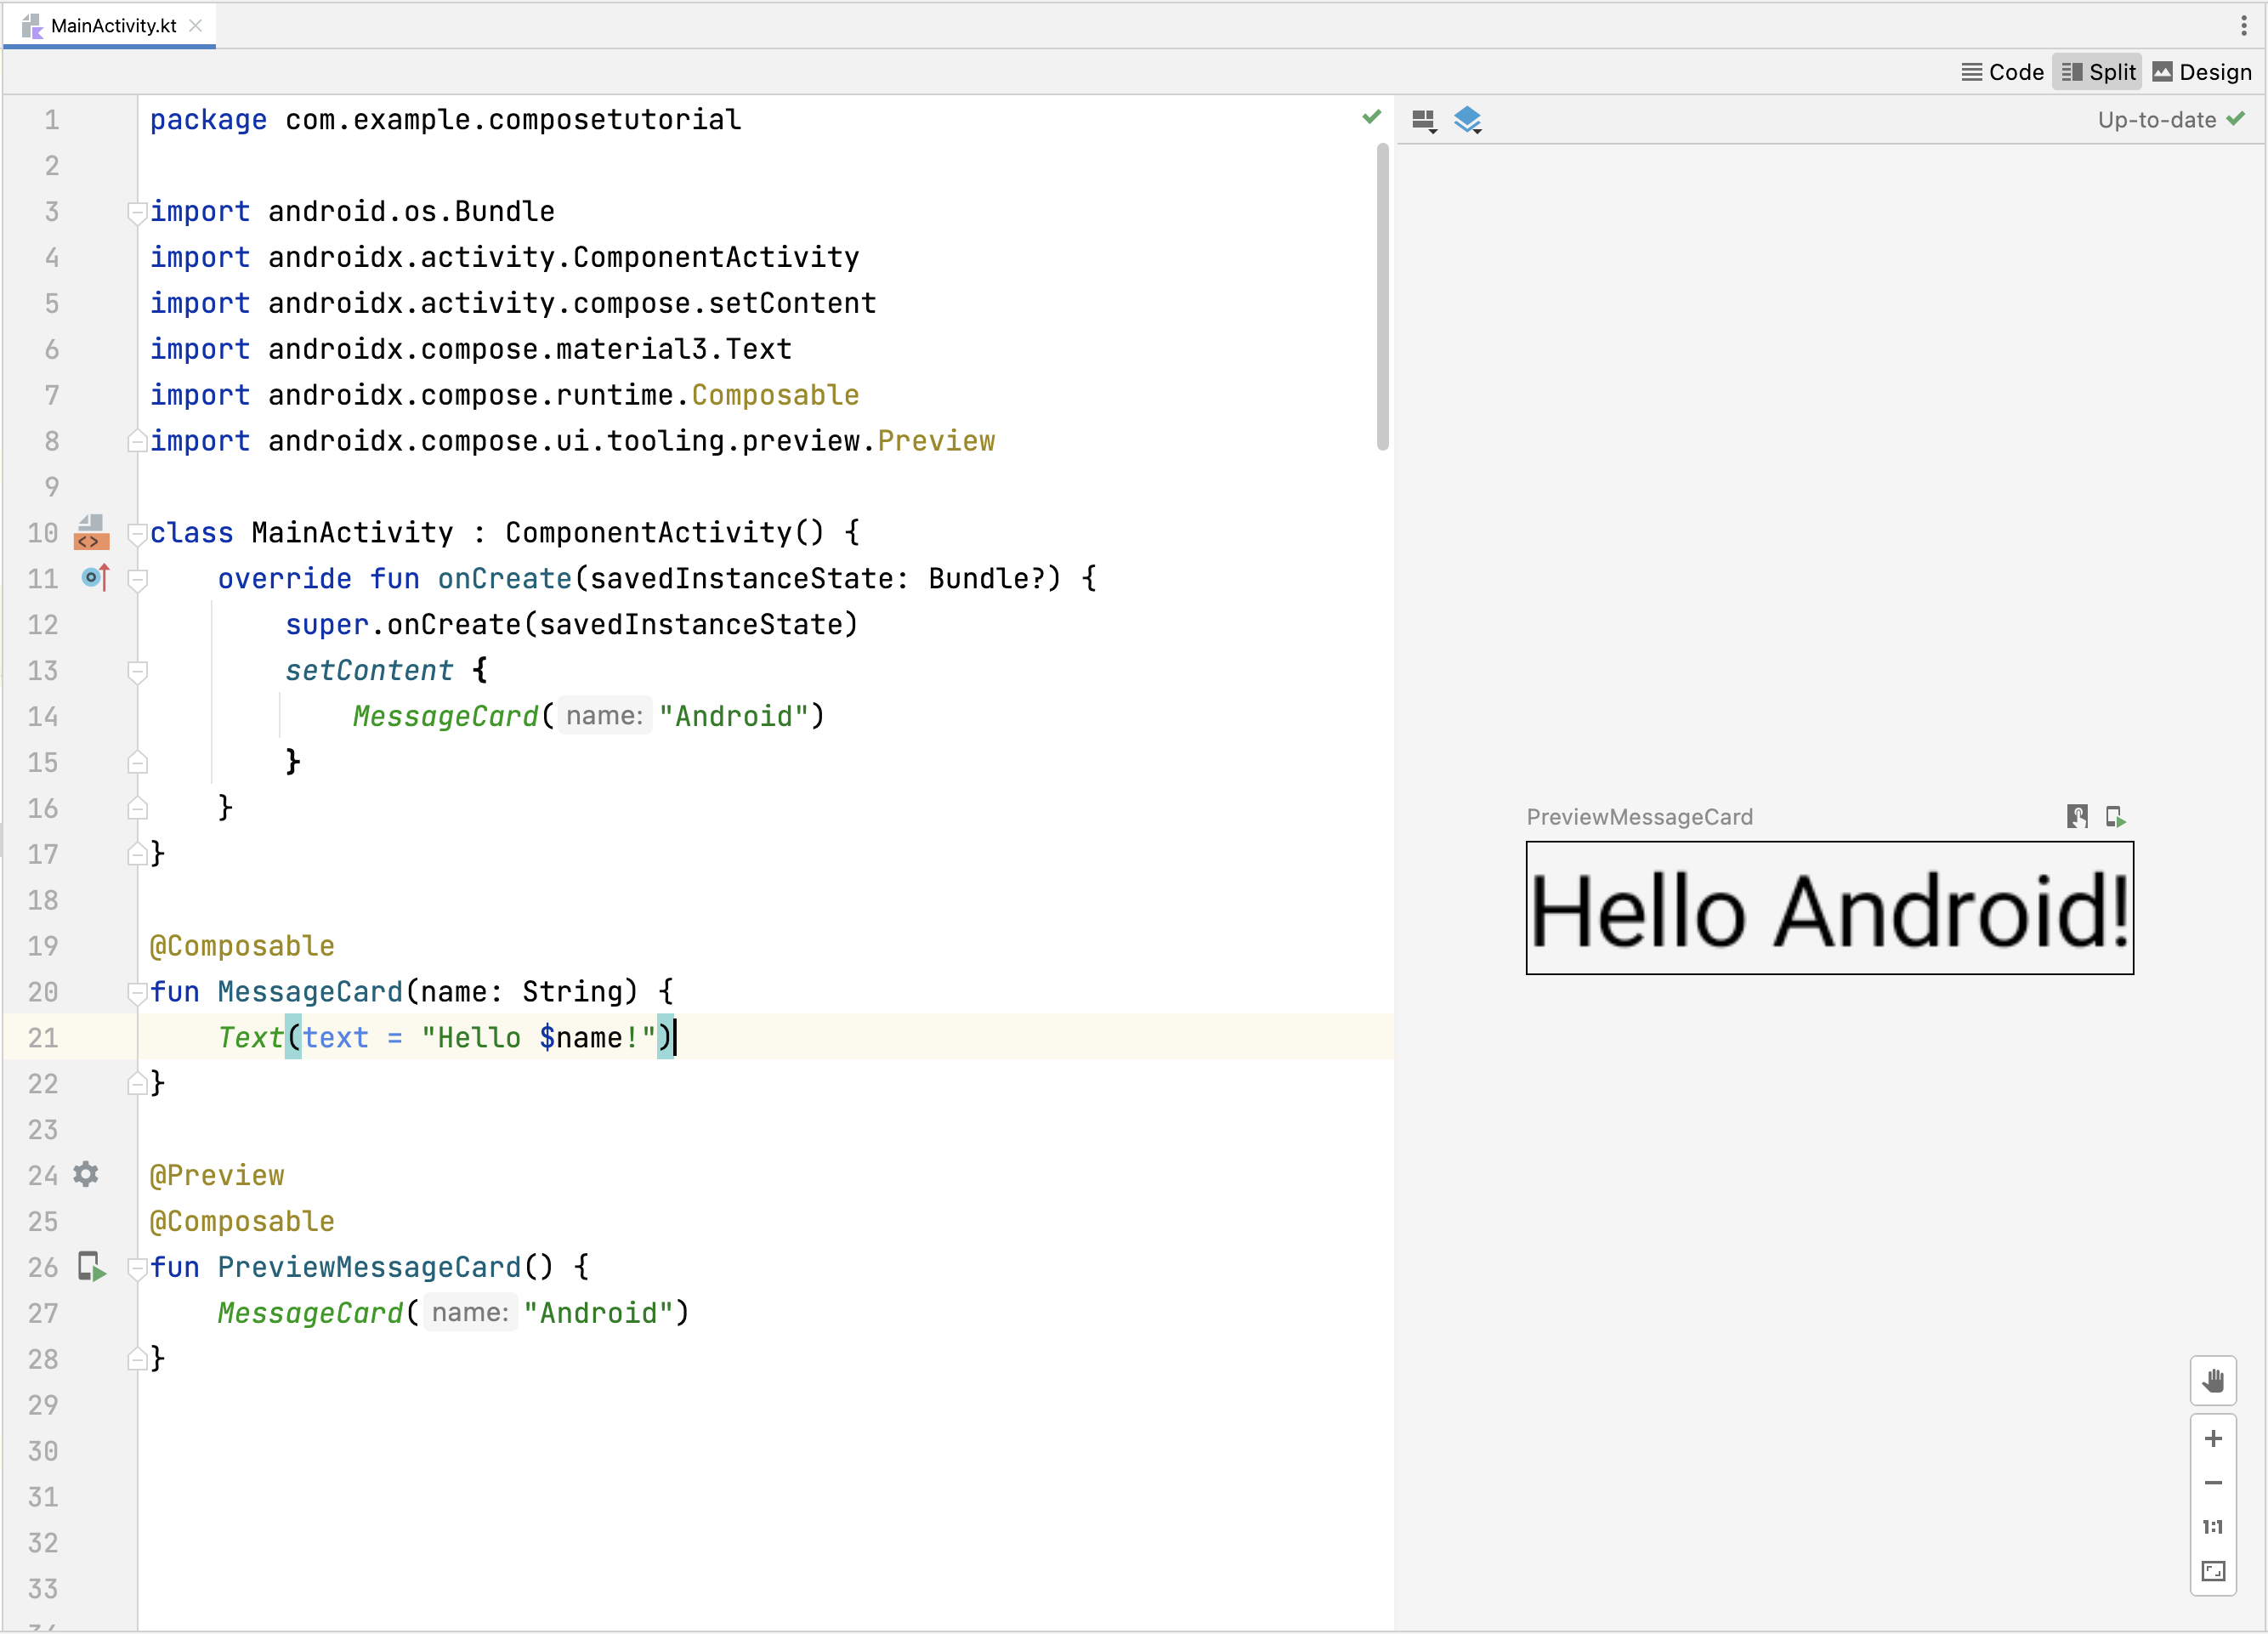 Prévia de uma função de composição no Android Studio